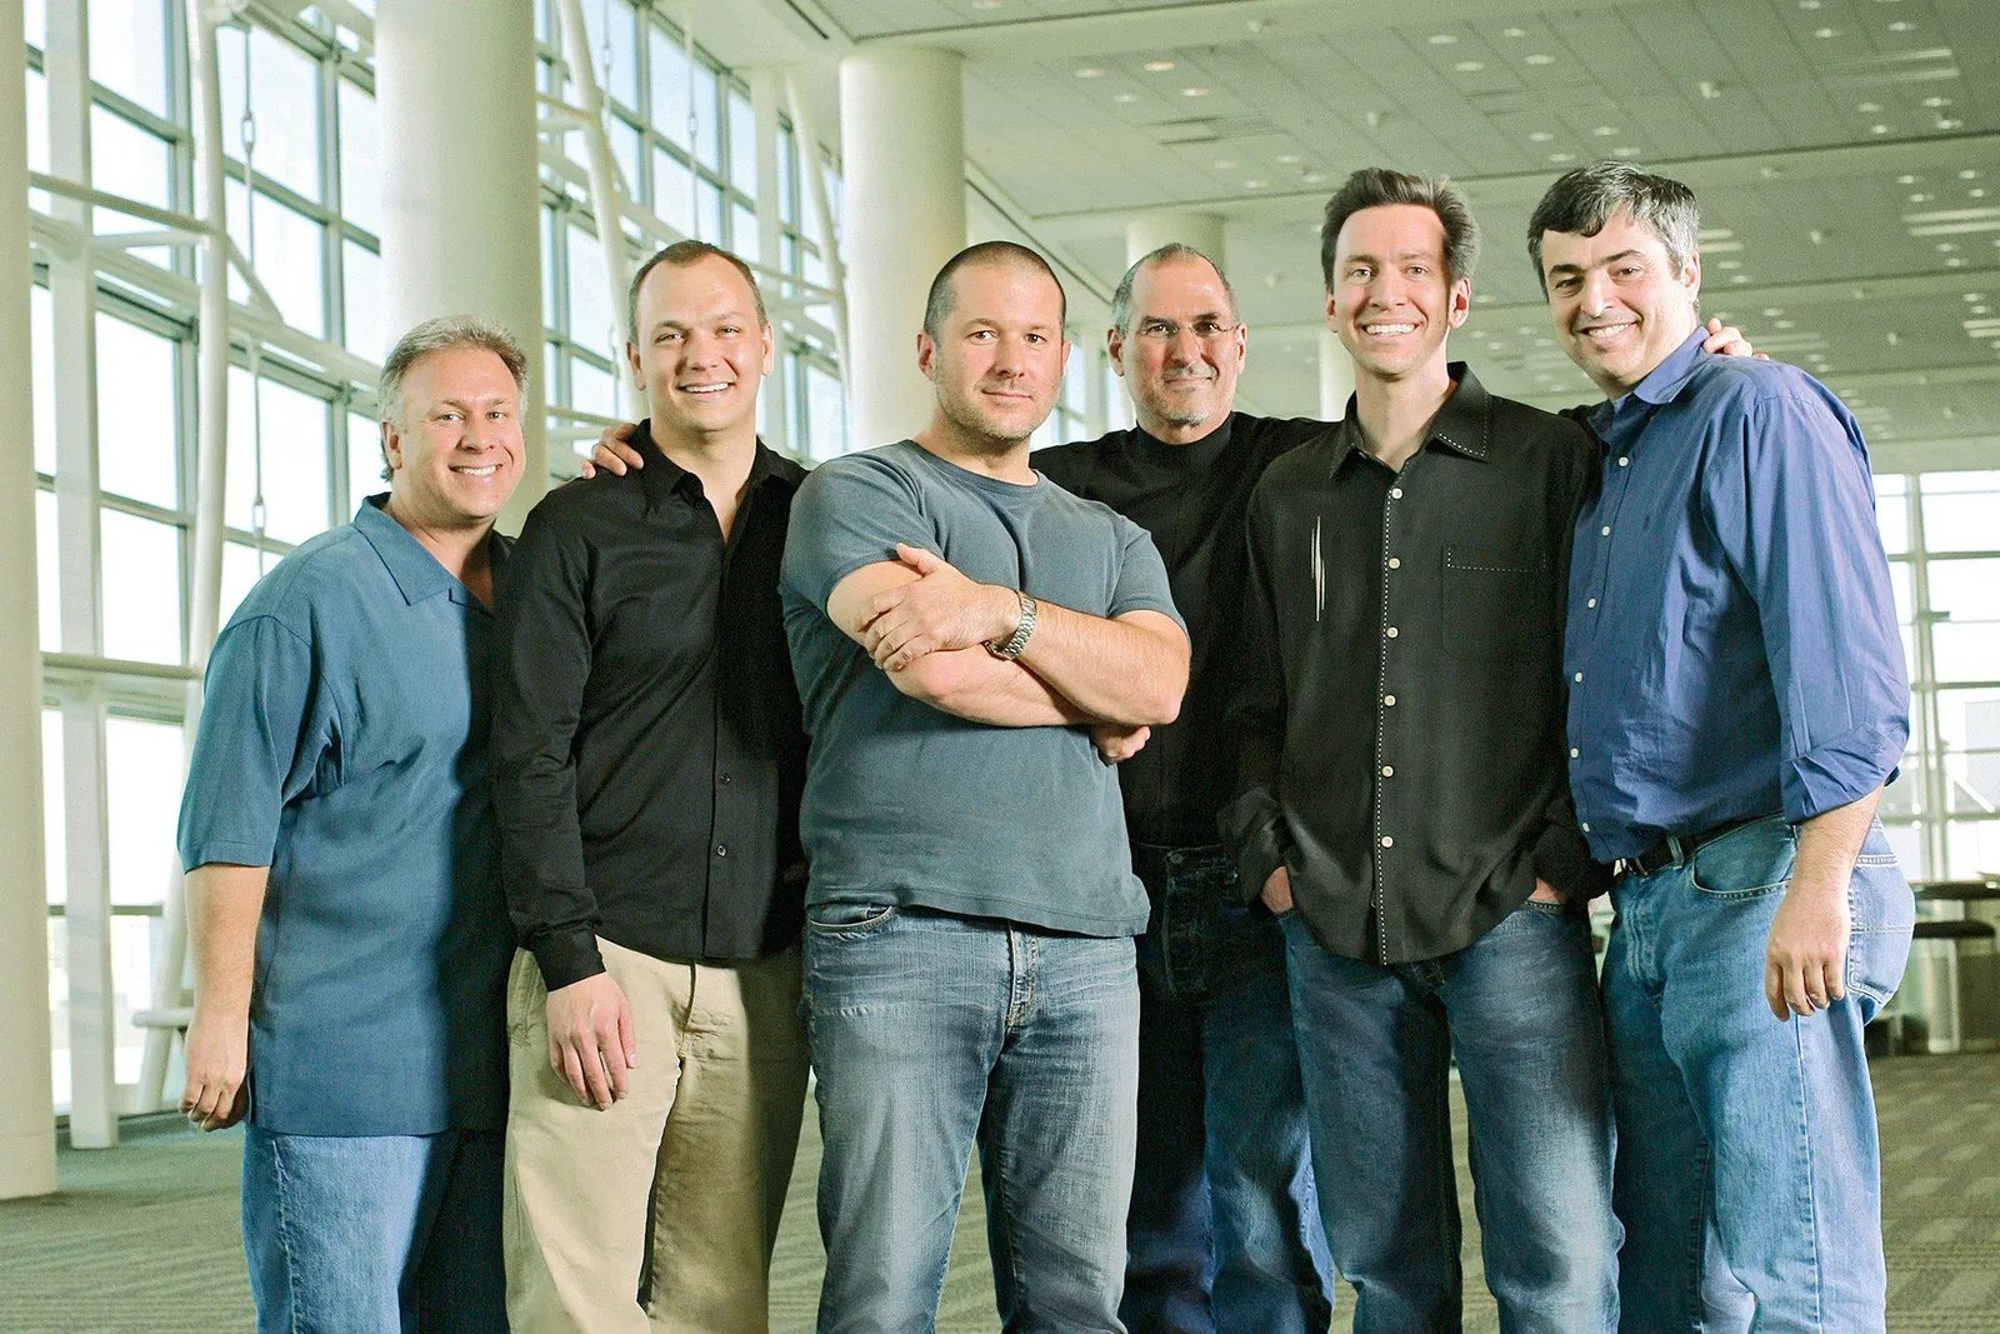 从左到右：Philip  Schiller（苹果营销资深副总裁）、Tony Fadell（iPod 之父、前苹果研发副总裁）、Jony Ive（前苹果设计副总裁）、Steve Jobs（前苹果 CEO）、Scott Forstall（前苹果研发副总裁）、Eddy Cue（现苹果服务高级副总裁）